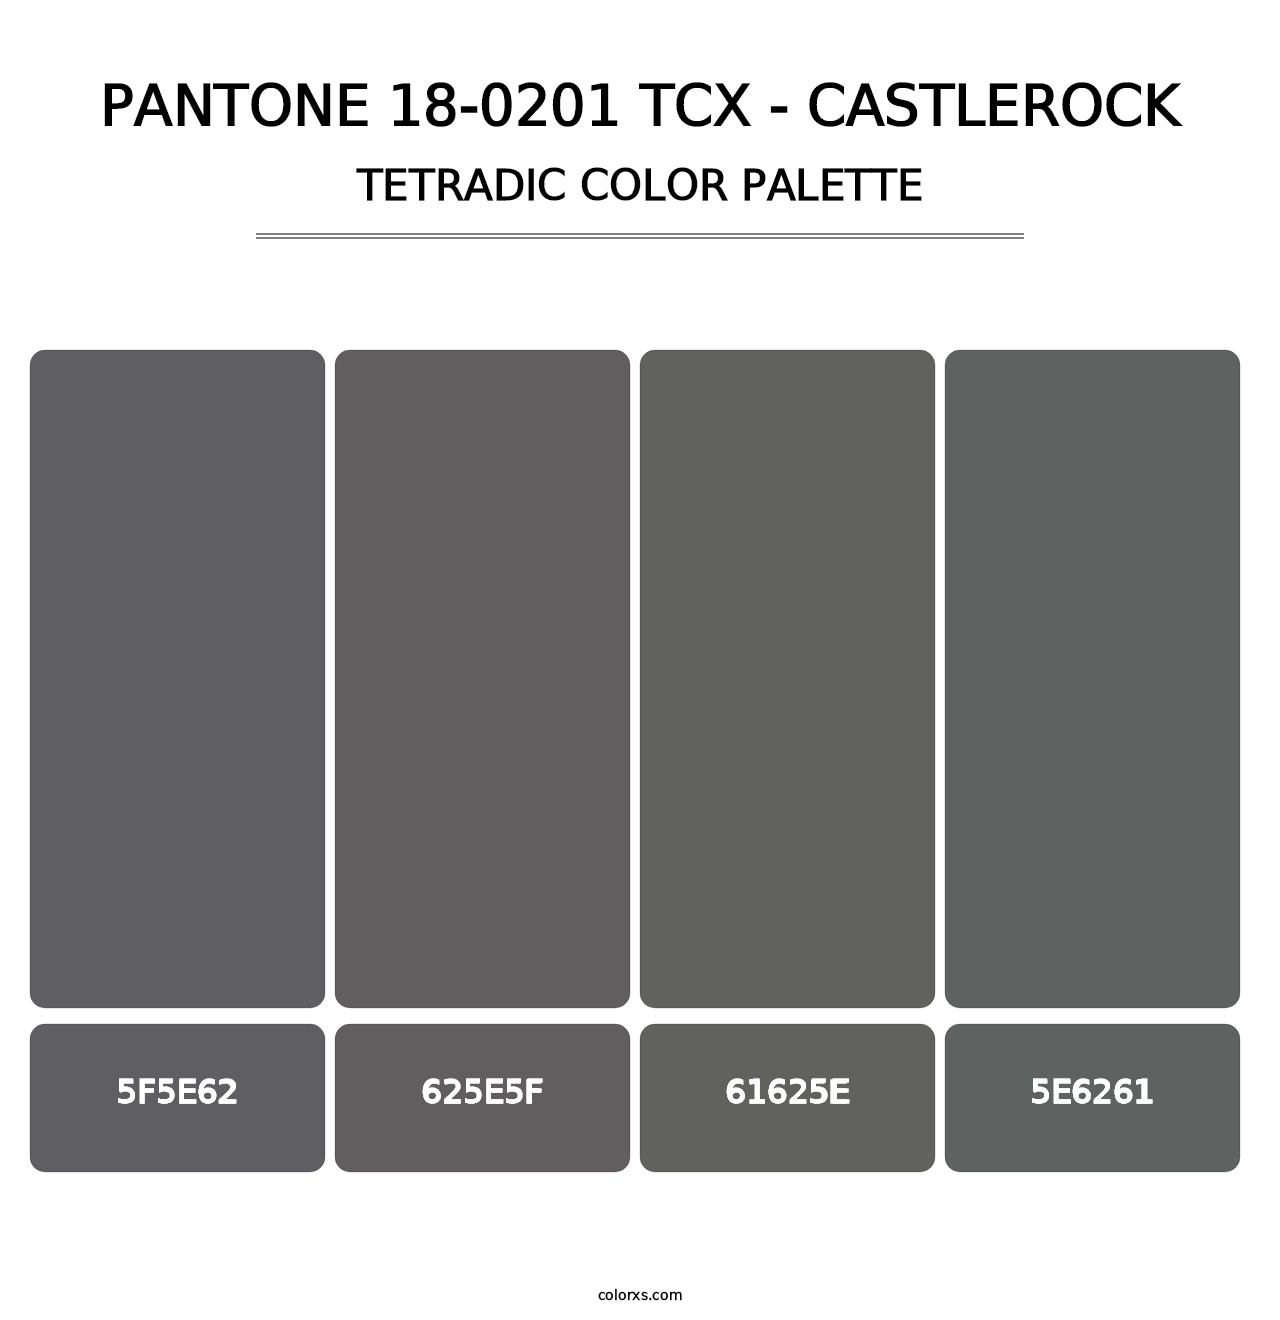 PANTONE 18-0201 TCX - Castlerock - Tetradic Color Palette